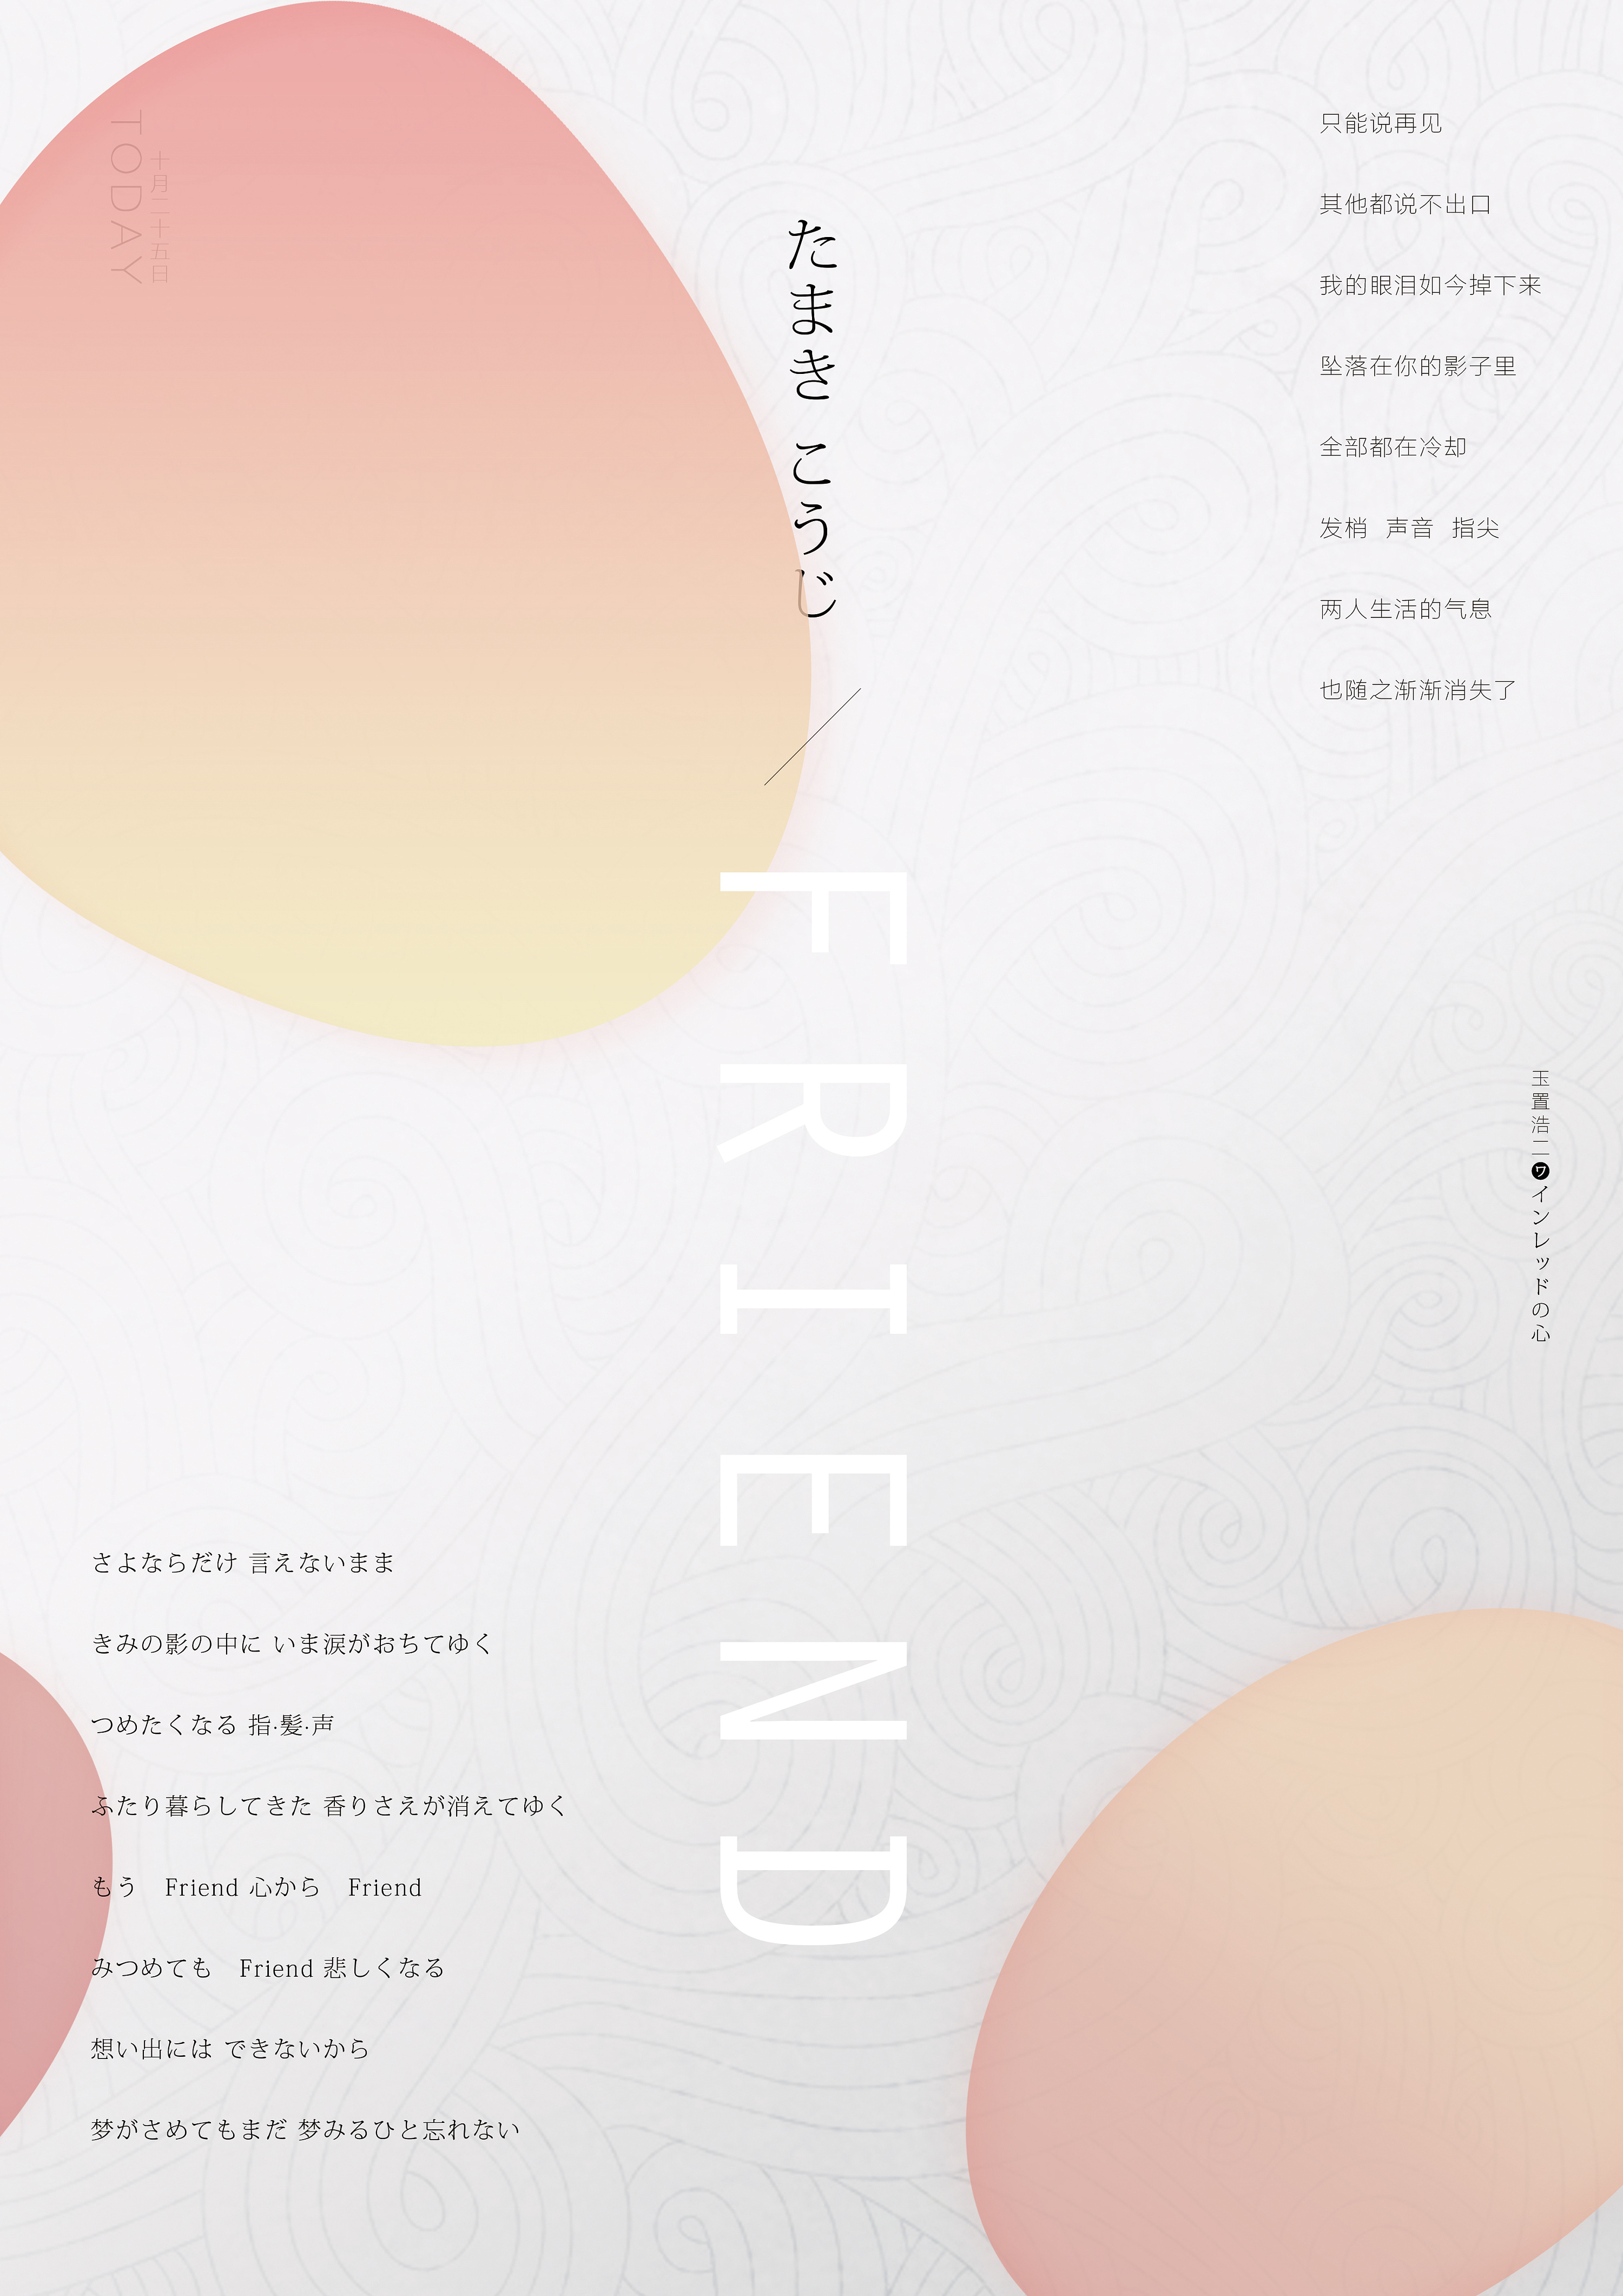 海 报 | Friend - 玉置浩二